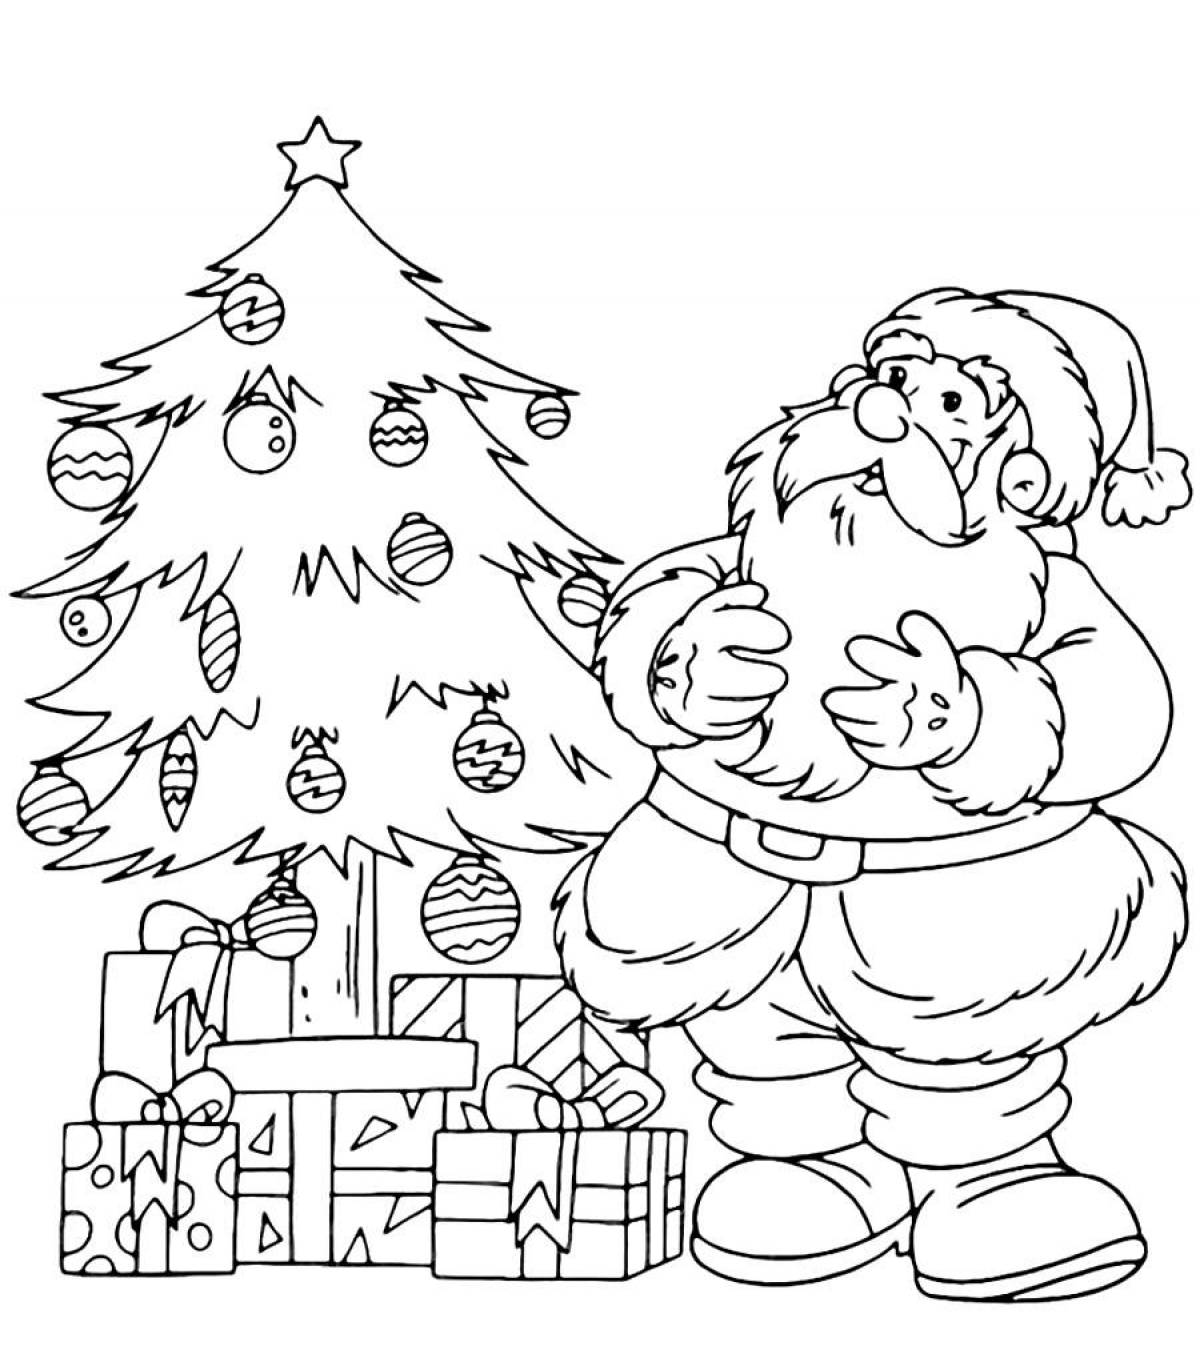 Santa claus coloring page